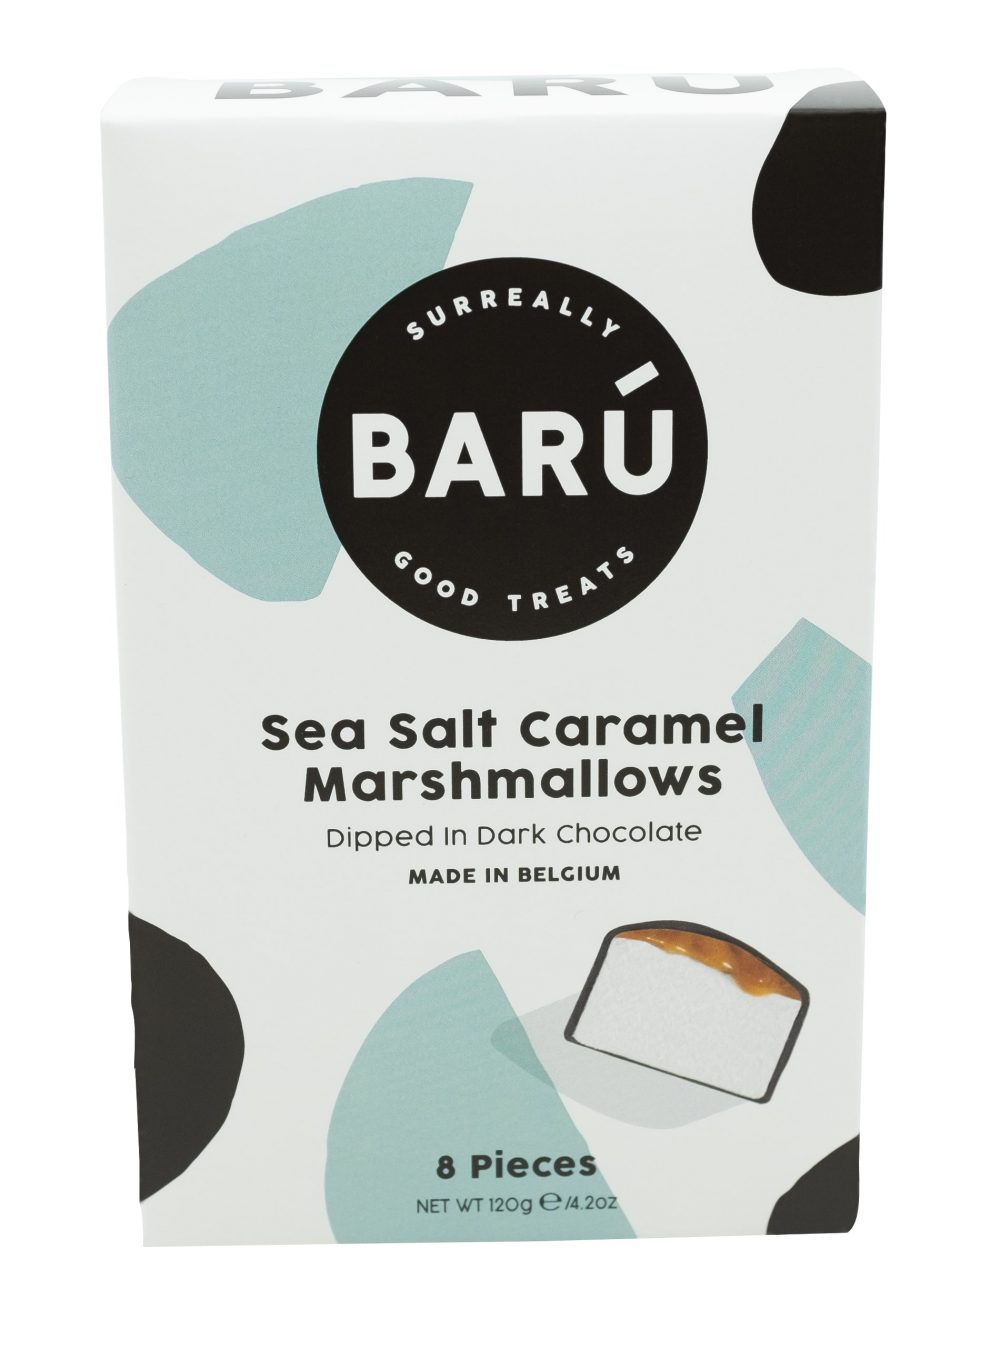 Barú 8-Piece Dark Chocolate Covered Marshmallows with Sea Salt Caramel